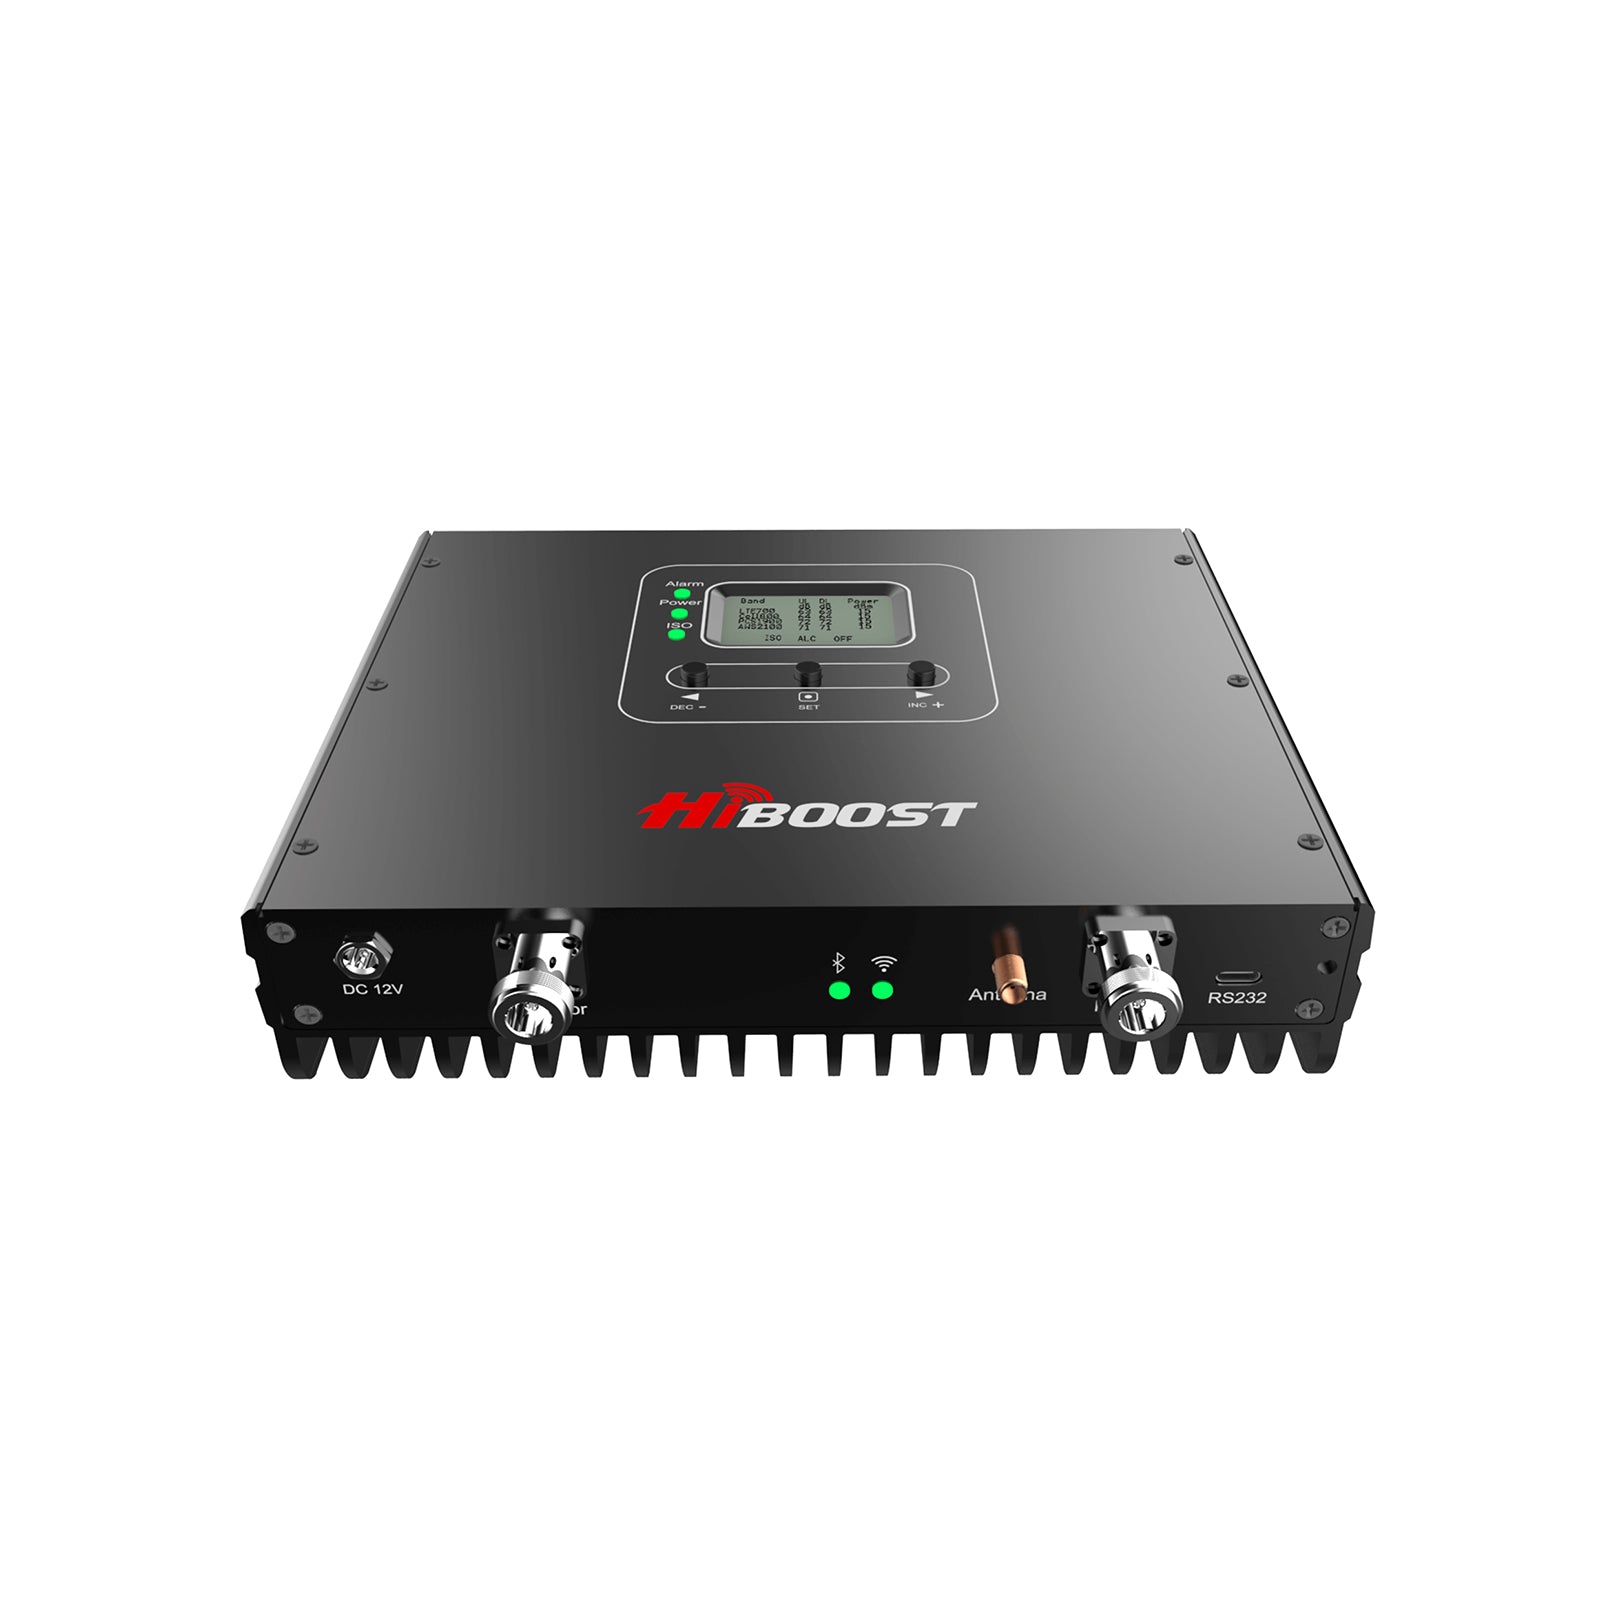 HiBoost SLT (20K Cellular Booster for Office) PRO20-5S-BTW